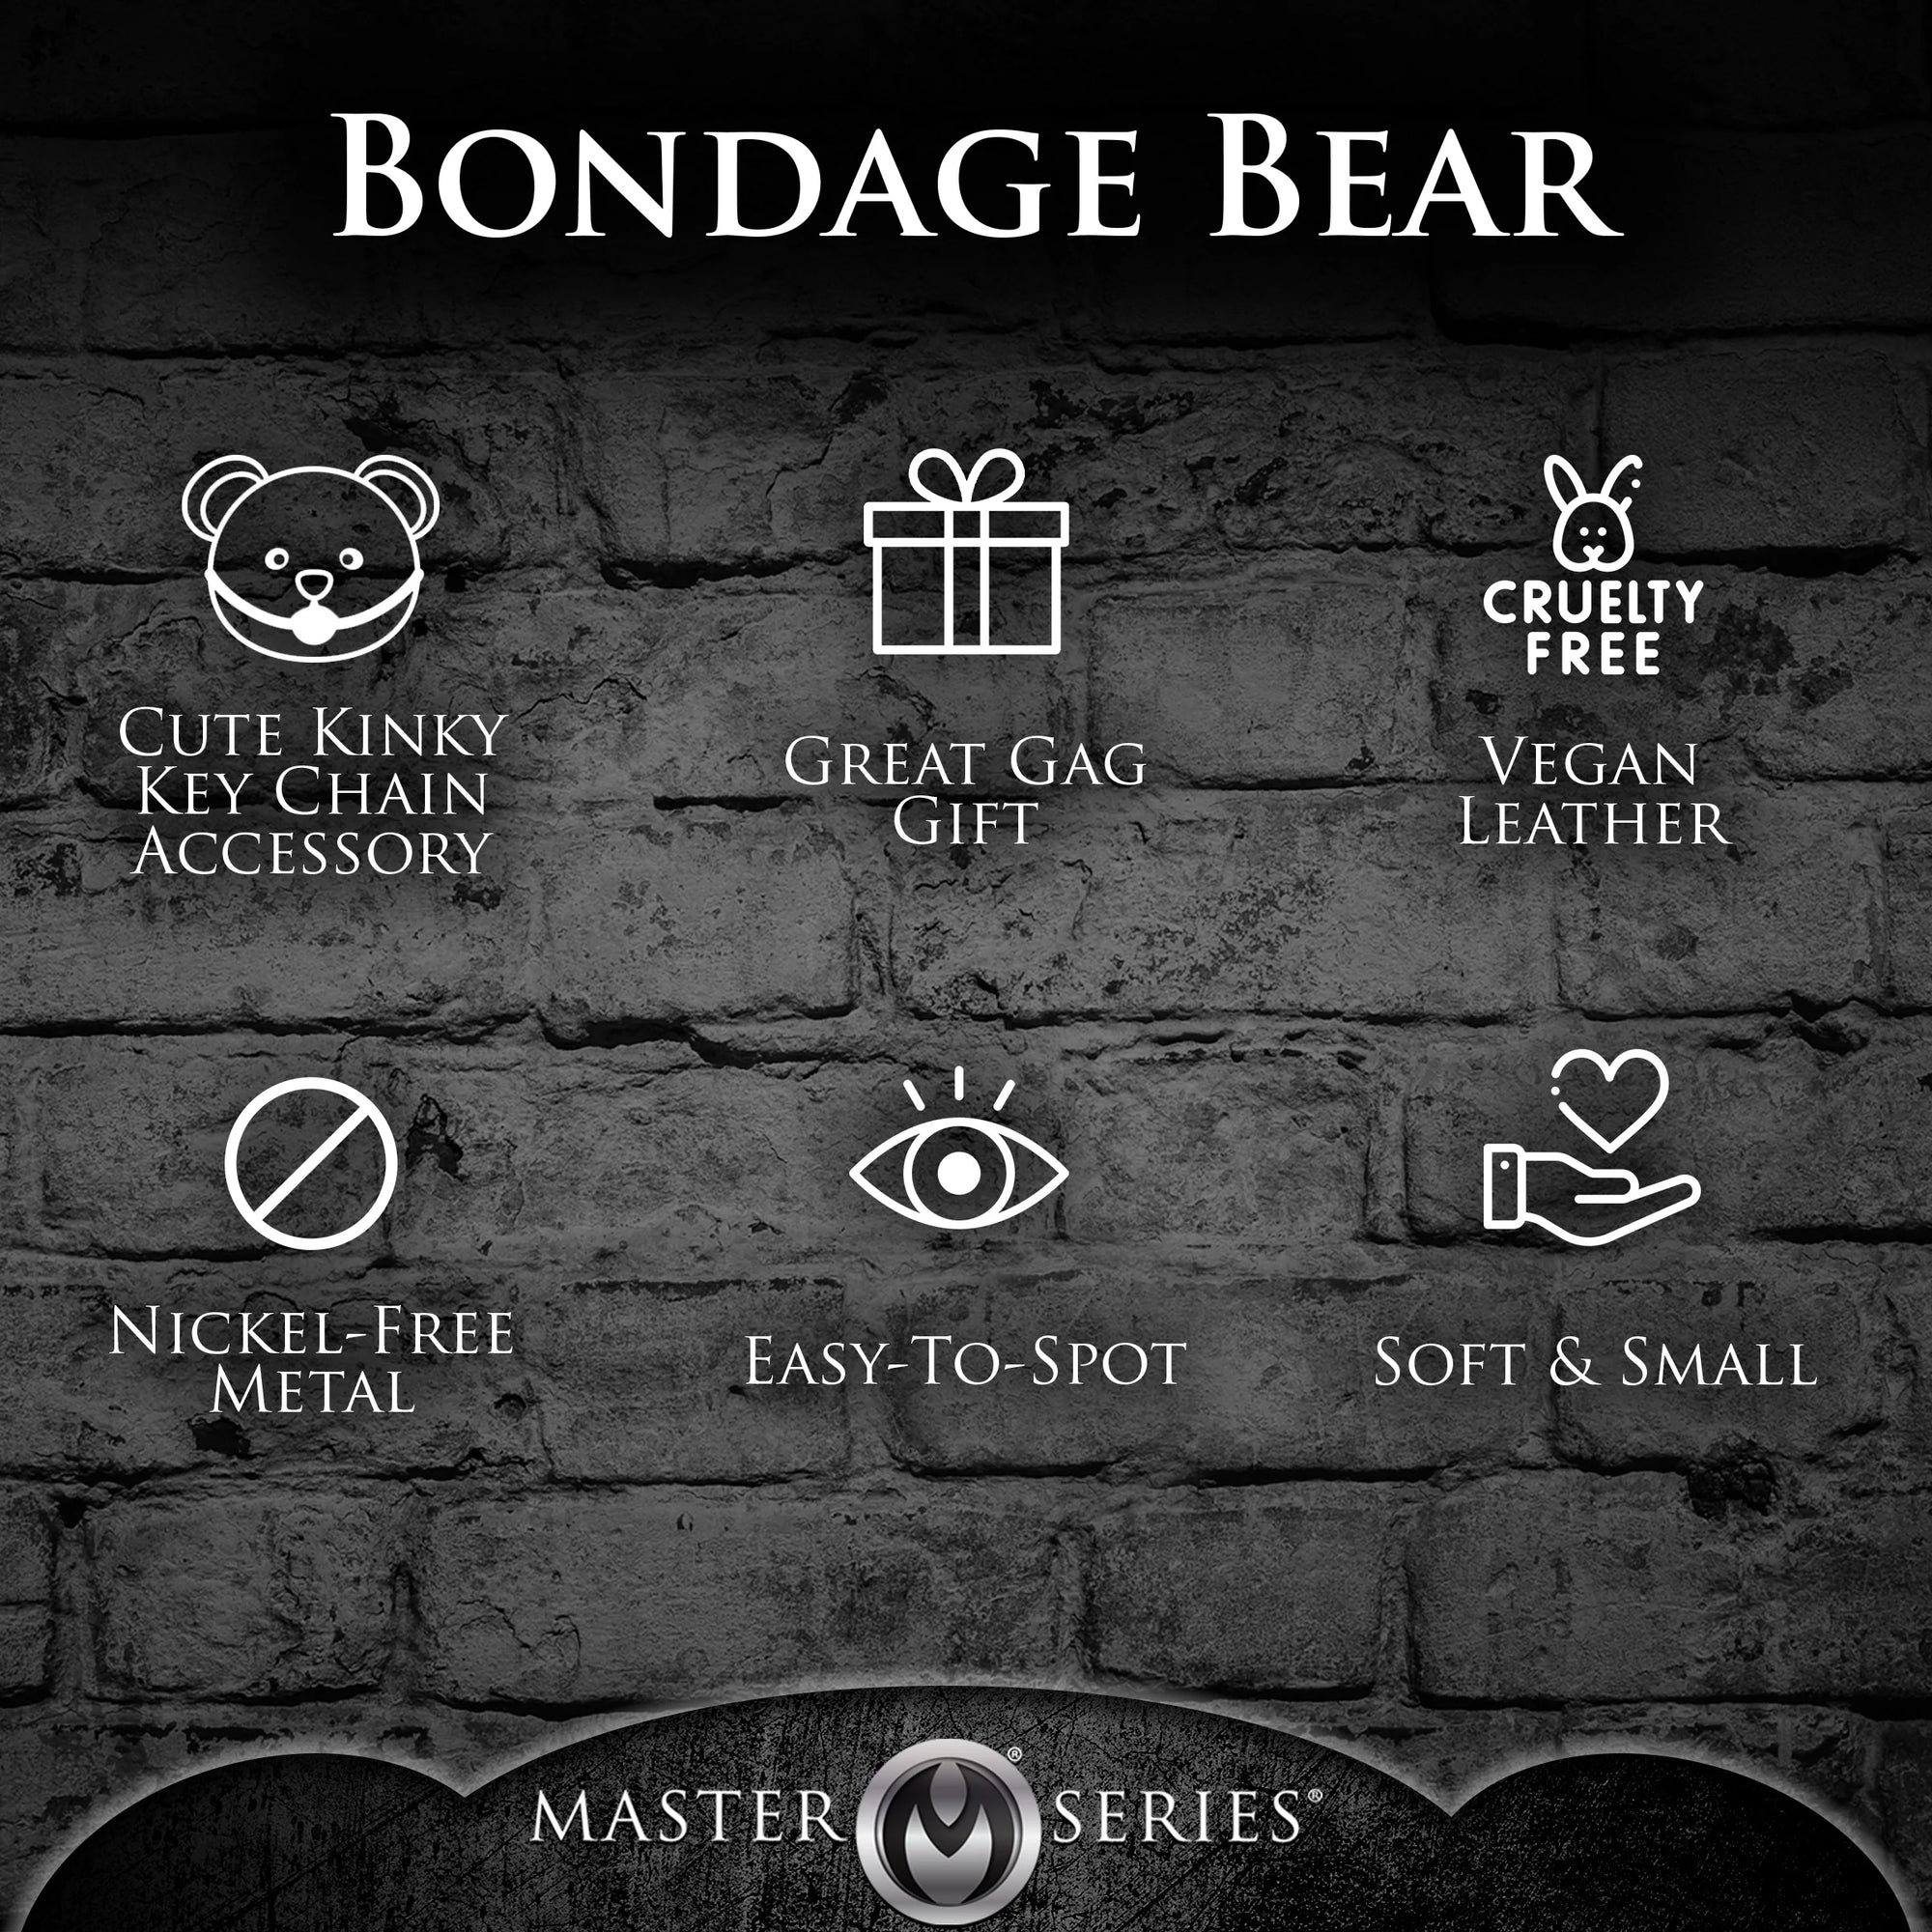 Bondage Teddy Bear Keychain Gagged by XR Brand